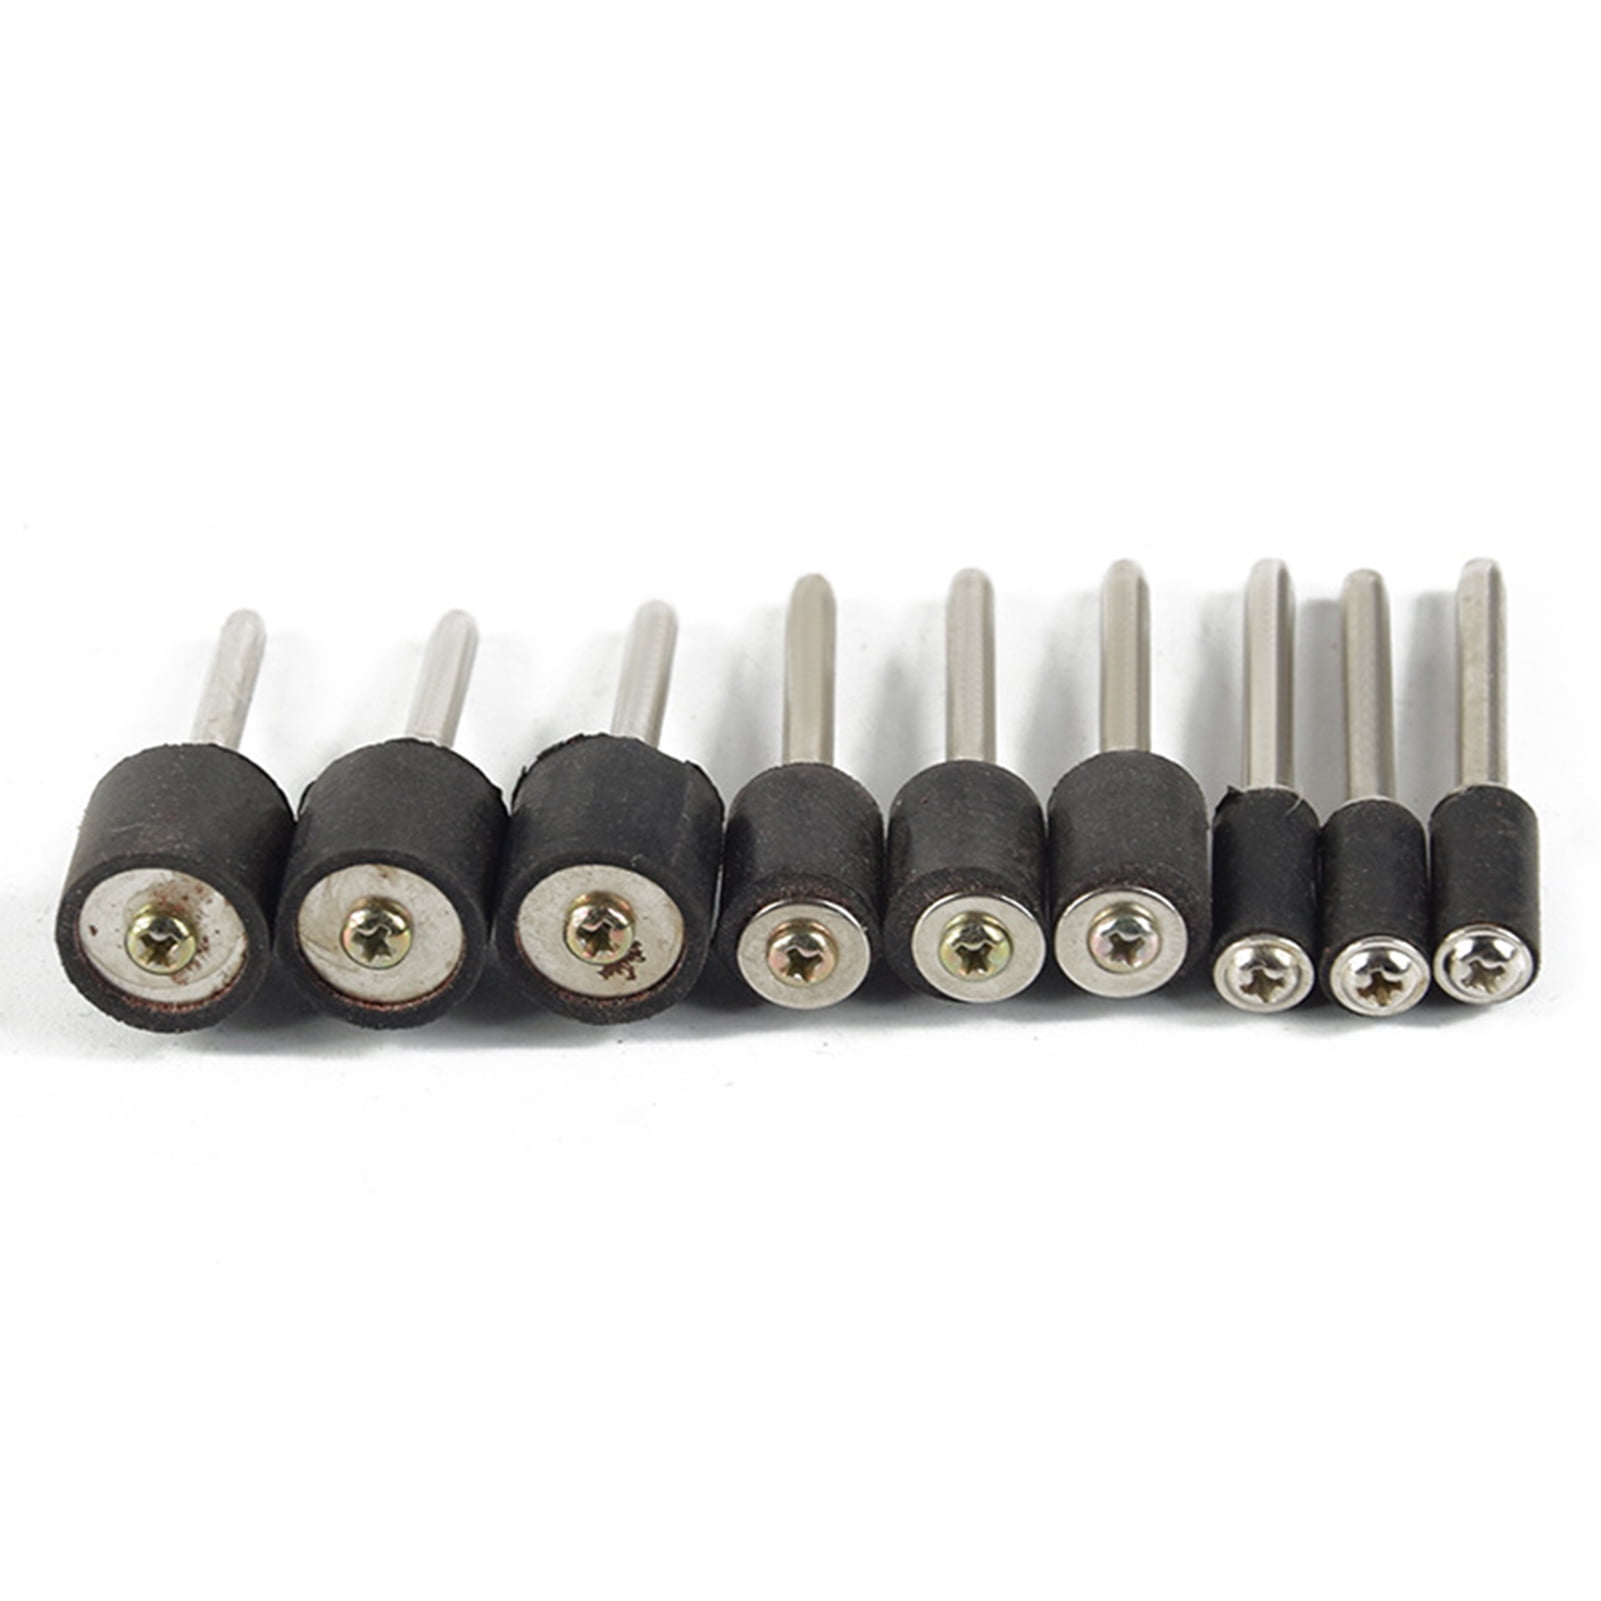 Tool 458PCS Sanding Drum Kit Nail Drill Bits Polished Dremel